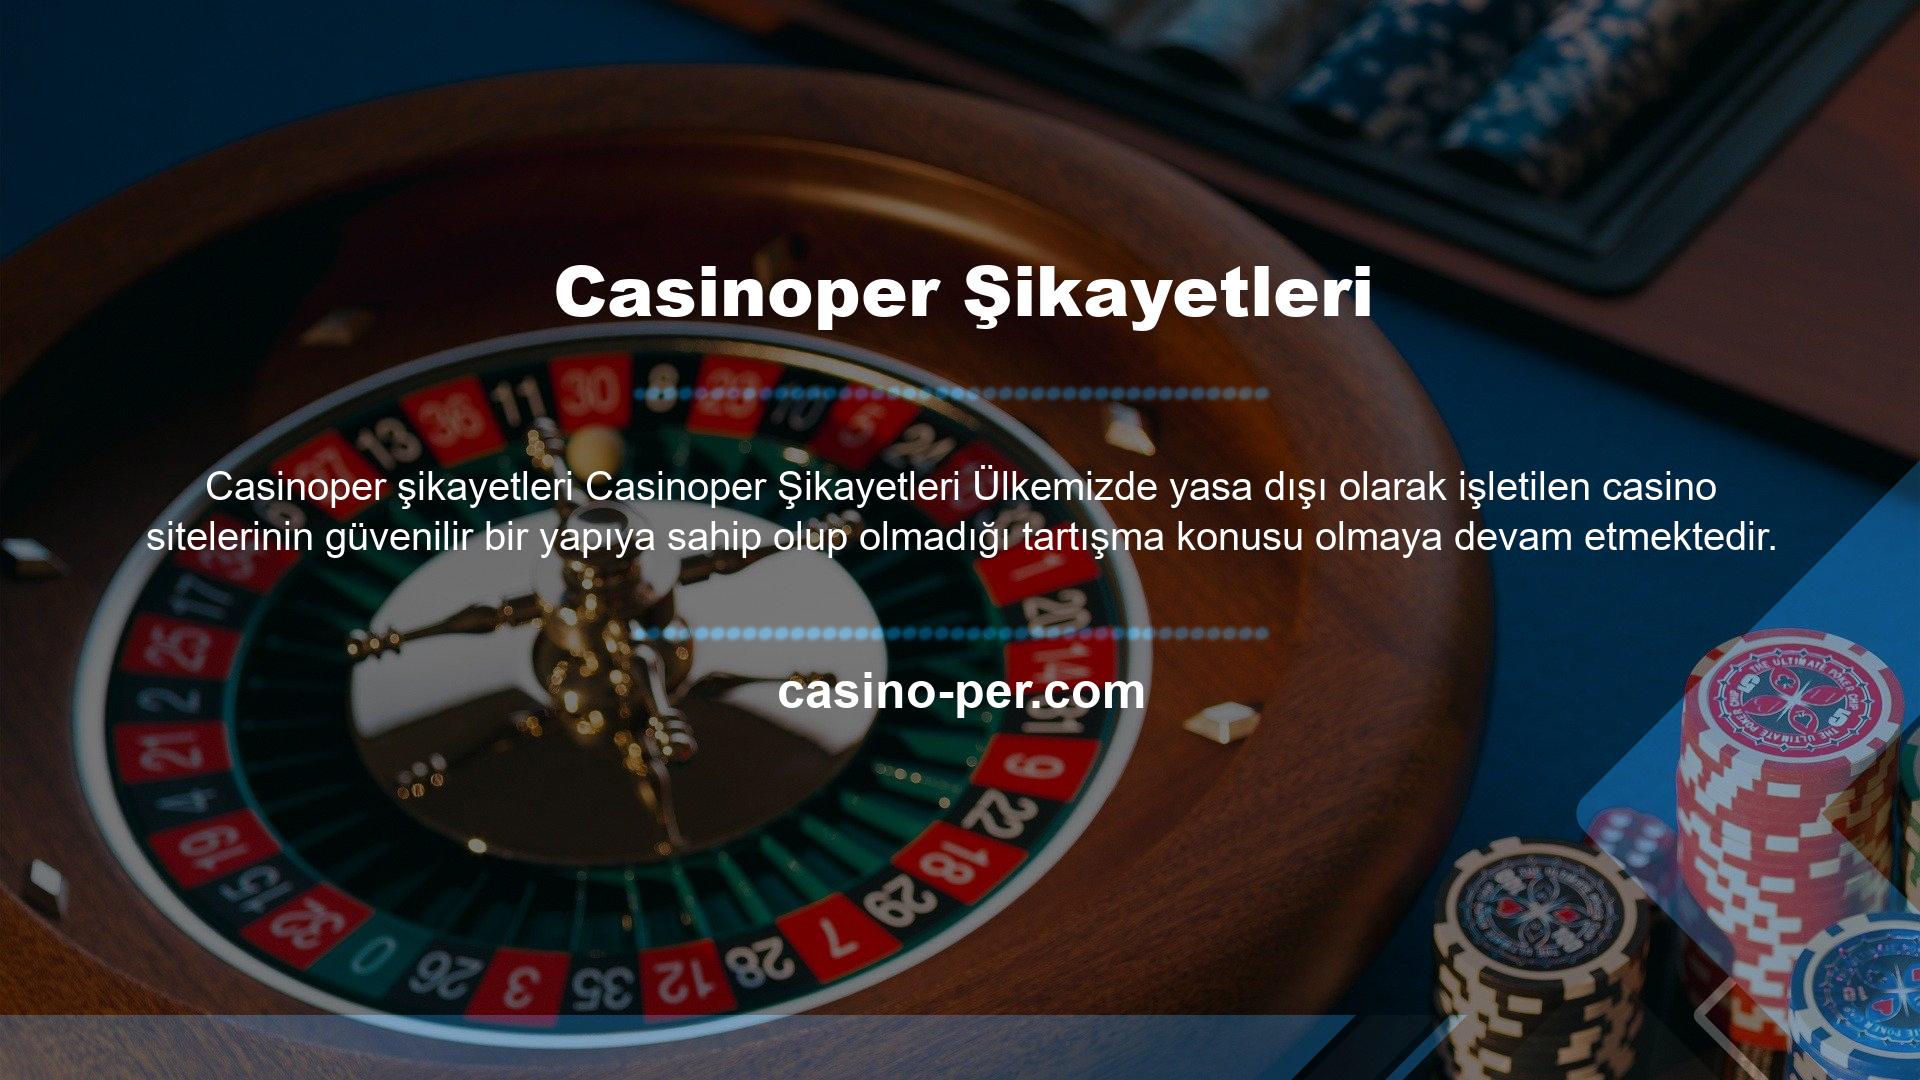 Casinoper Gaming yeni oluşturulmuş bir platform olmasına rağmen kısa sürede bahis tutkunlarının güvenini kazanmıştır